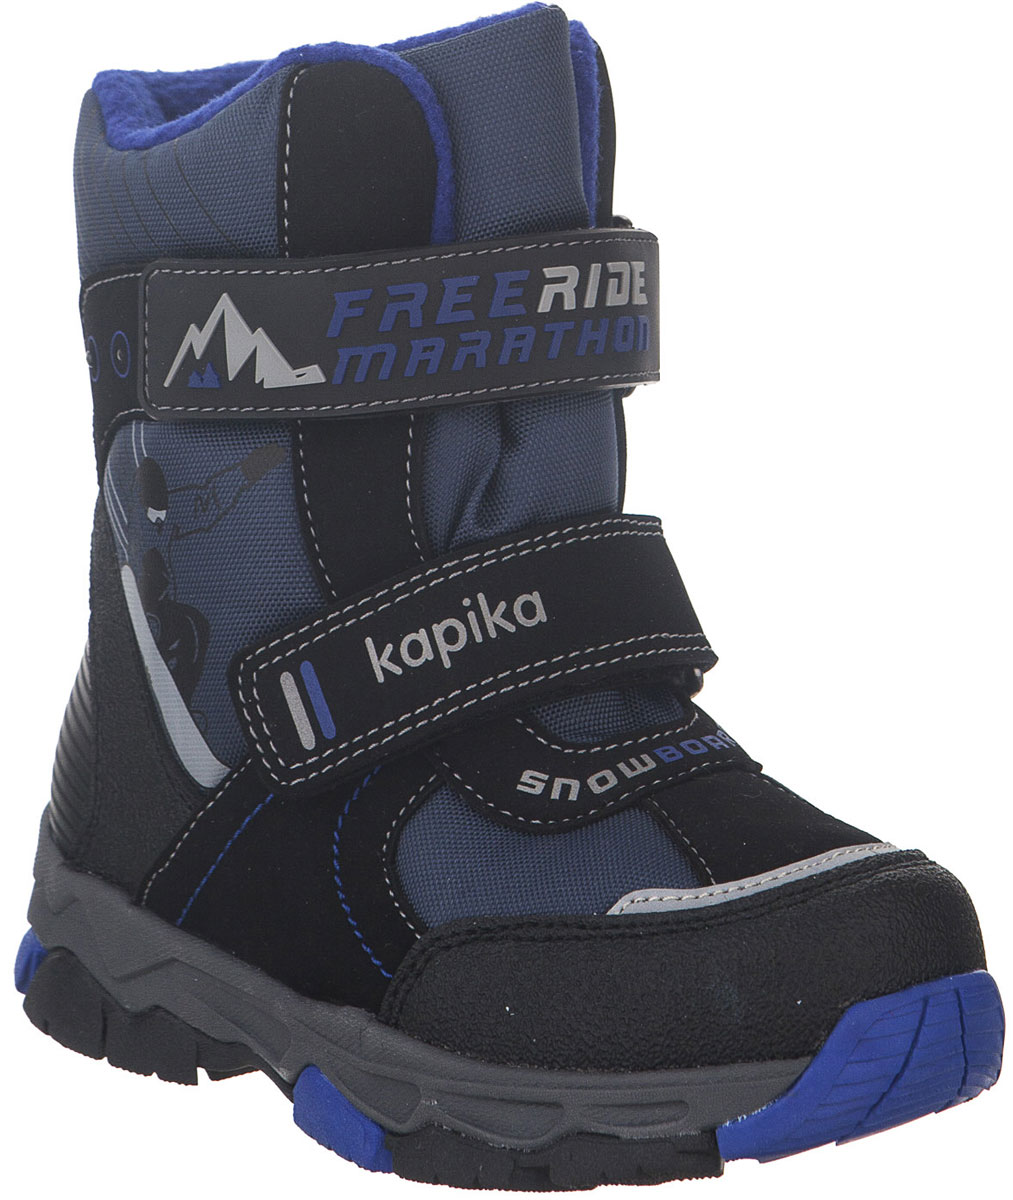 Ботинки для мальчика Kapika, цвет: черный, синий. 42219-1. Размер 28